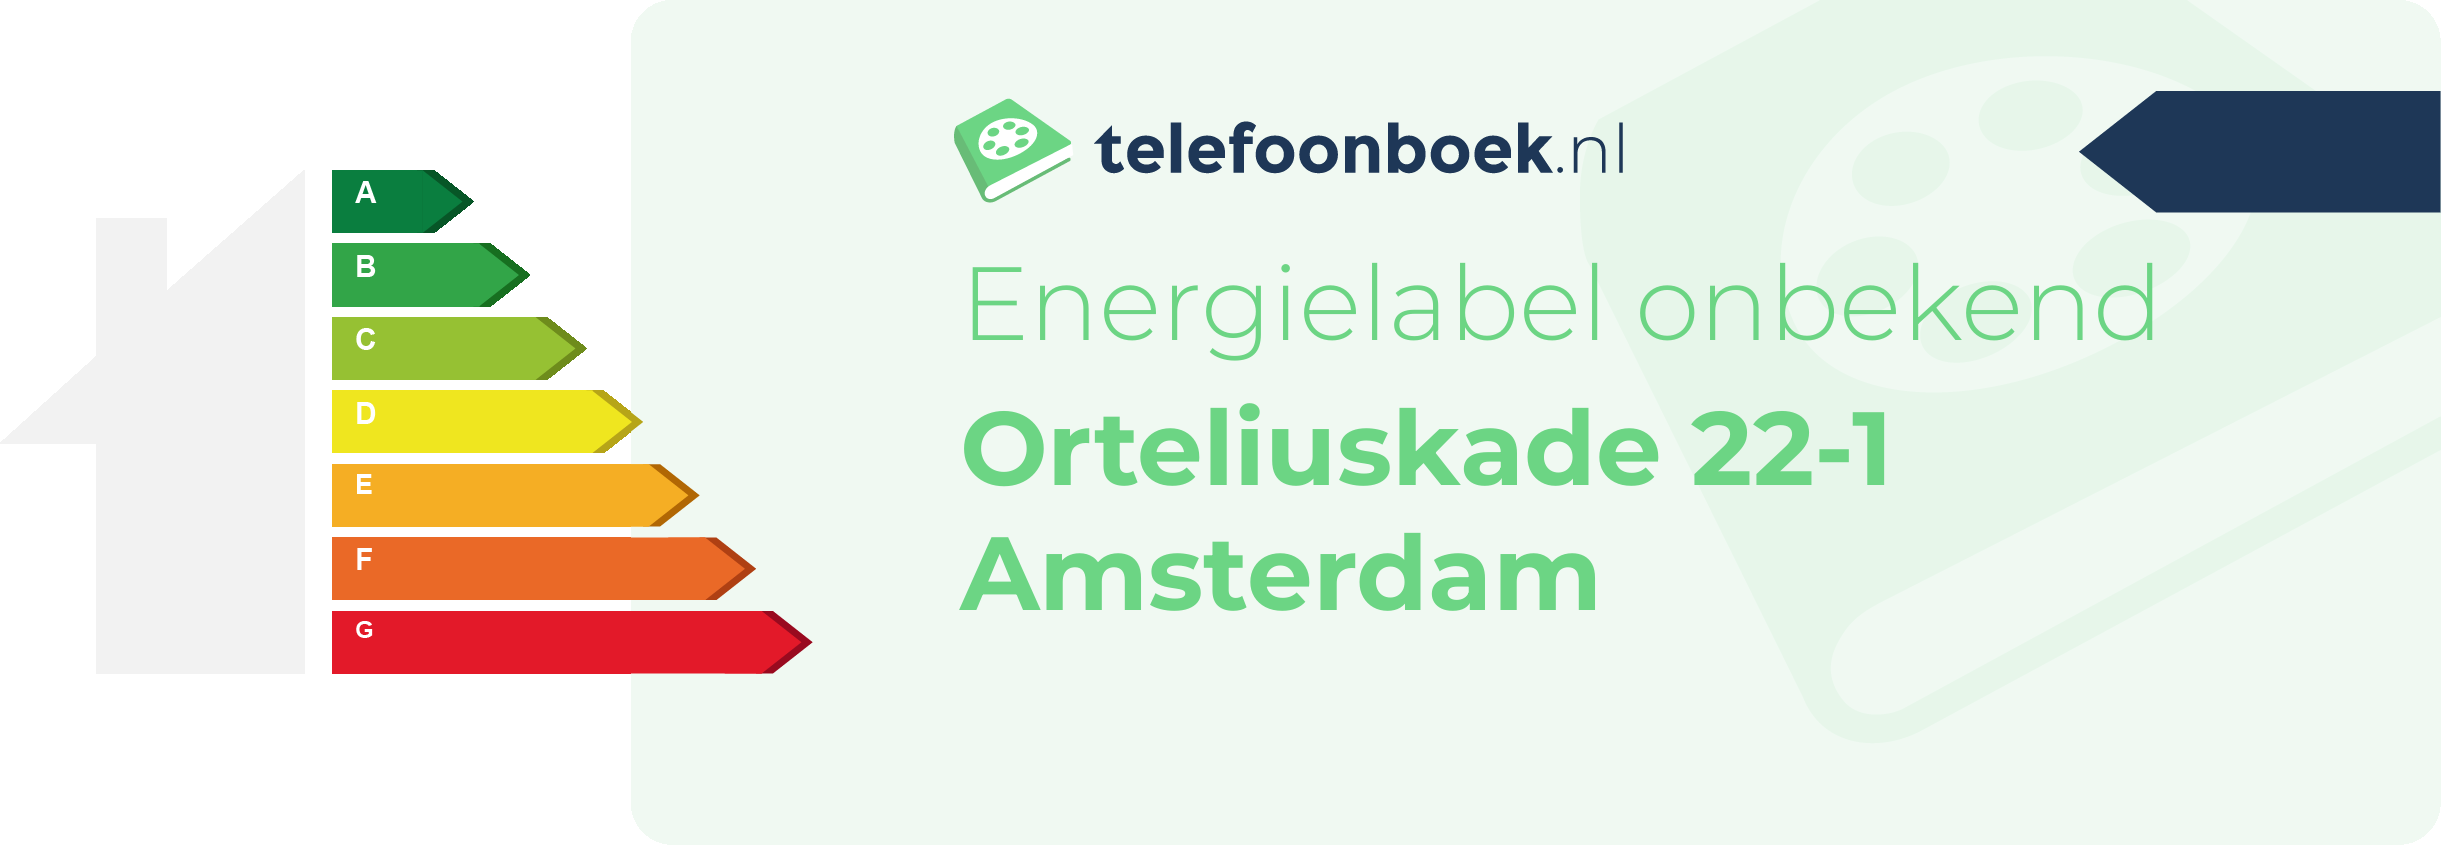 Energielabel Orteliuskade 22-1 Amsterdam